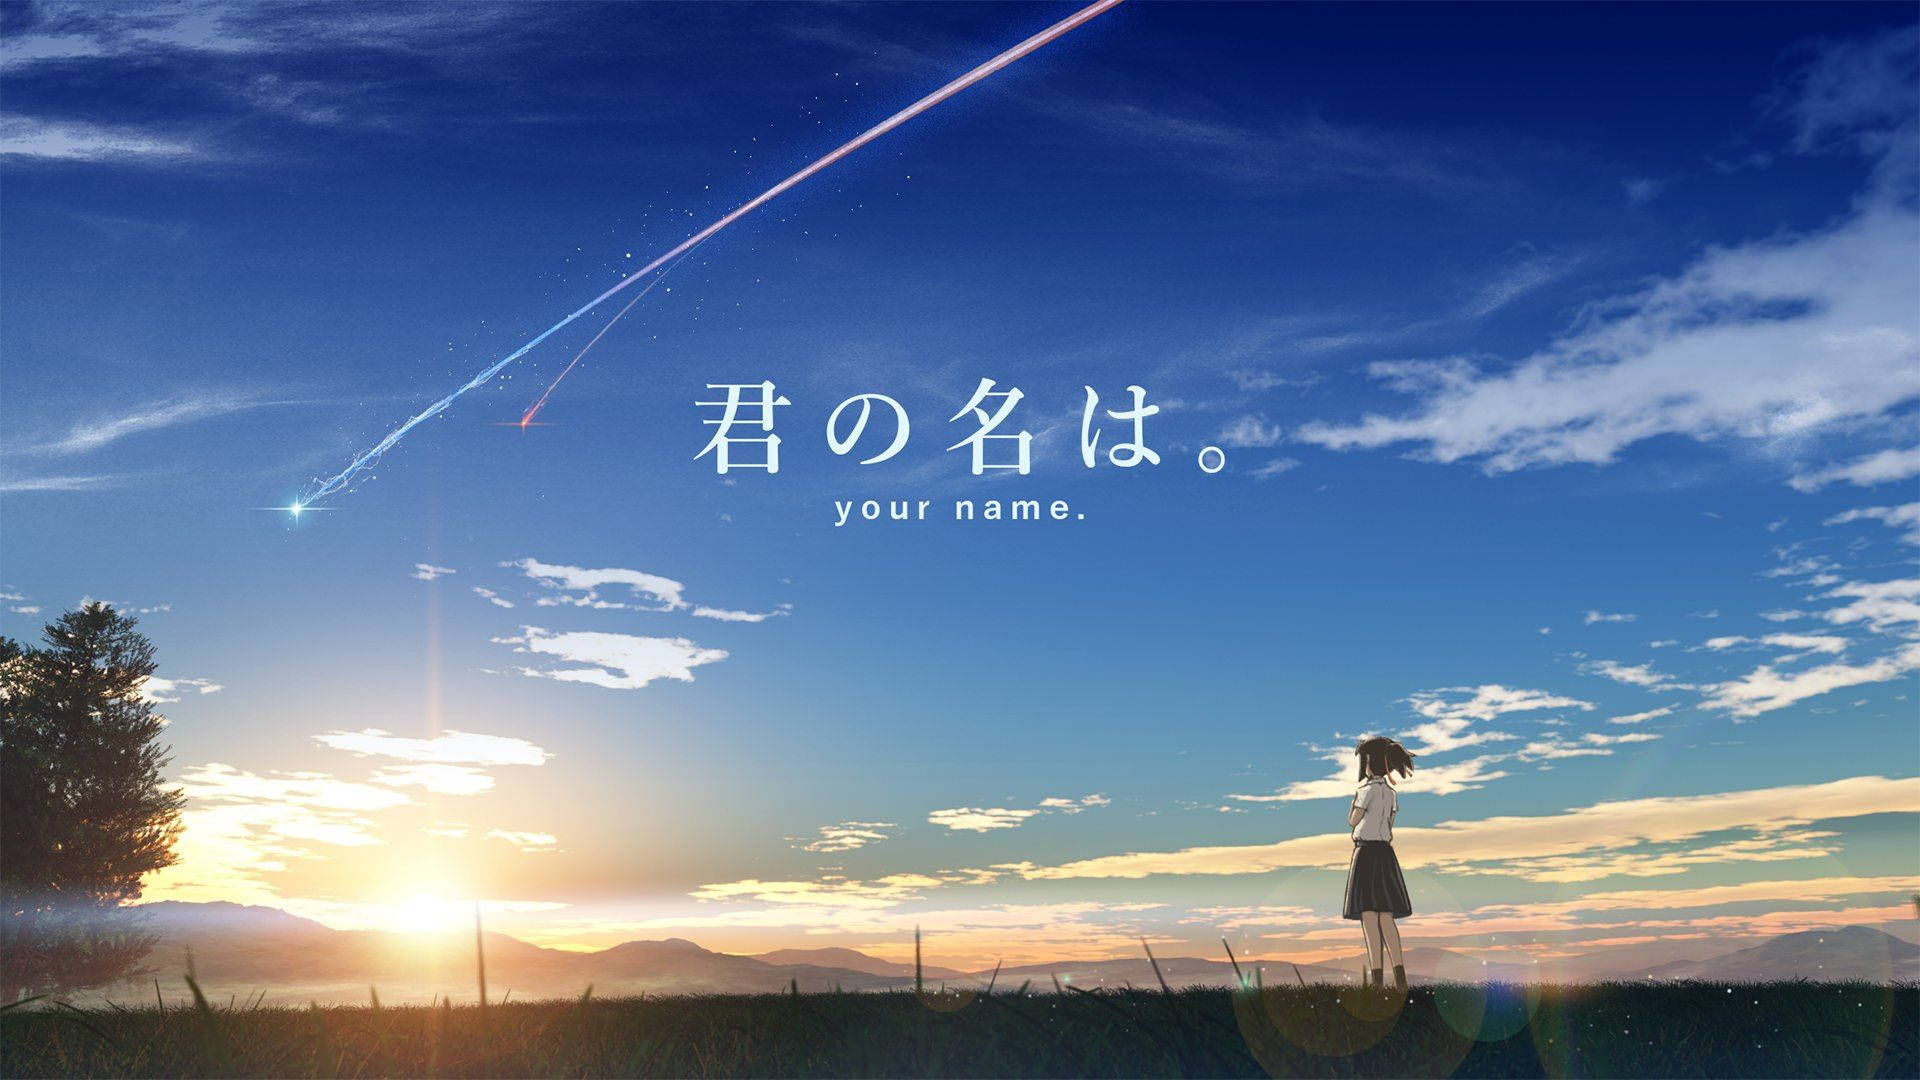 Kimi No Na Wa Mitsuha And Comet Background